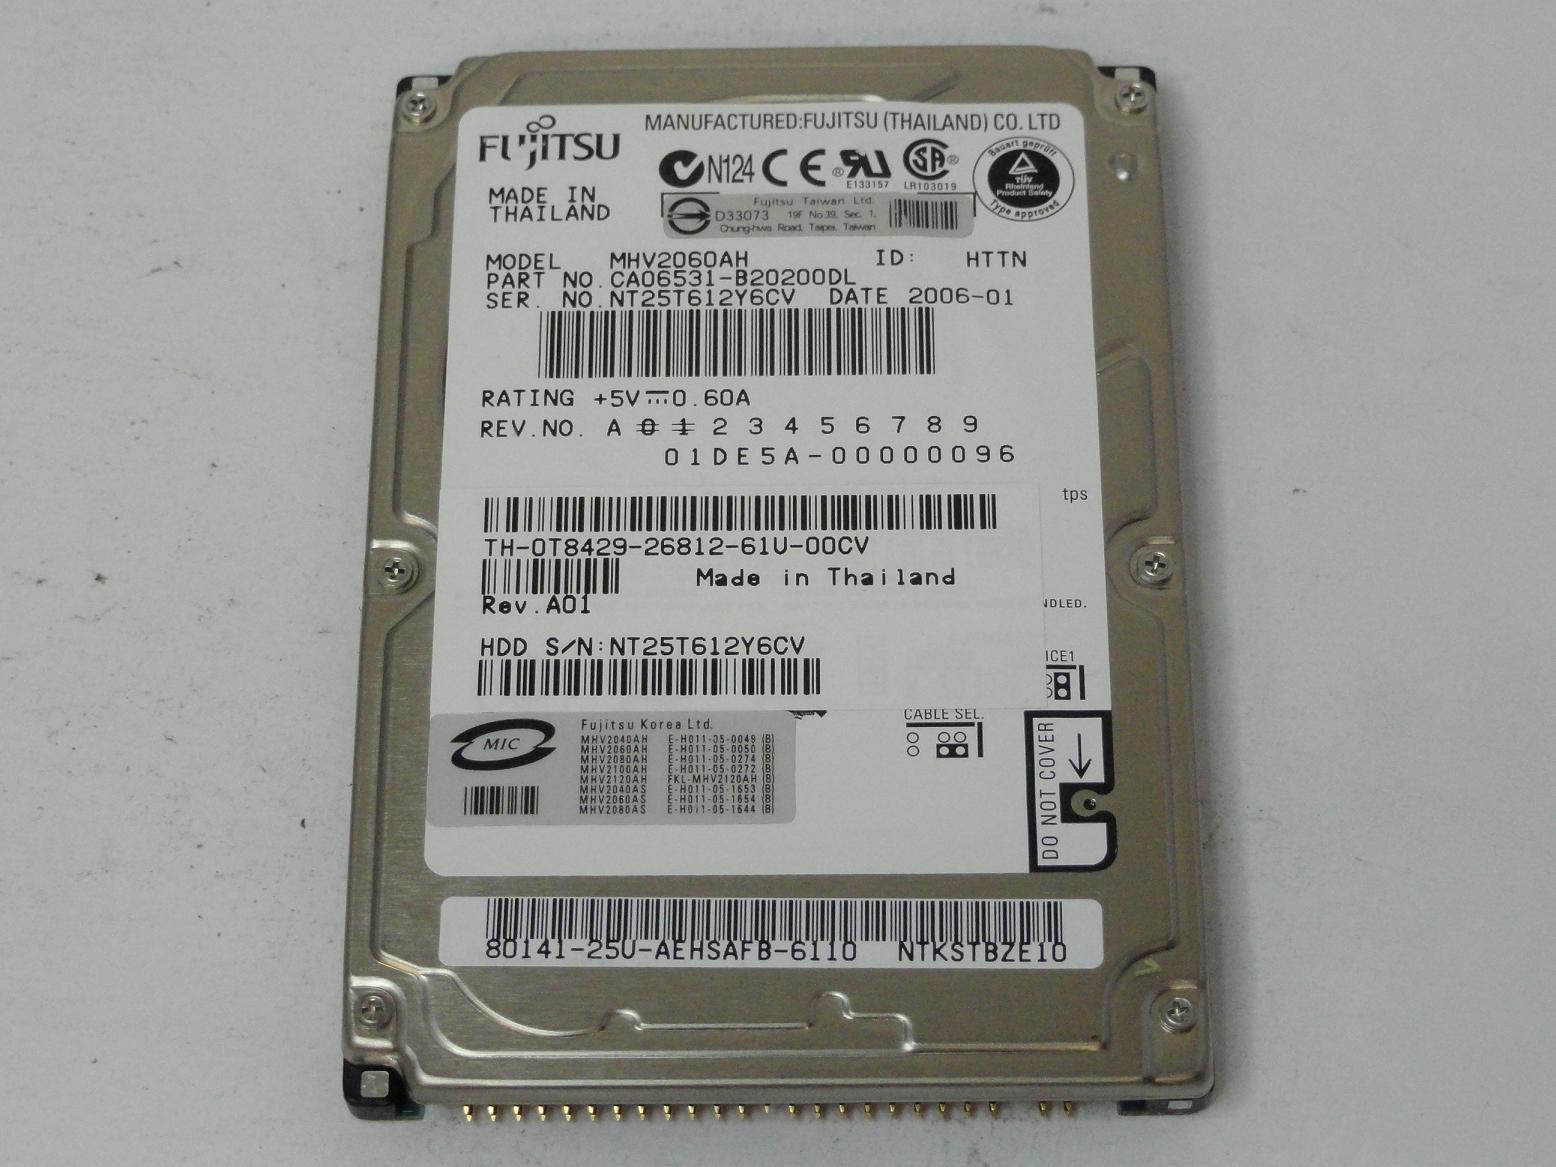 MC6761_CA06531-B20200DL_Fujitsu Dell 60GB IDE 5400rpm 2.5in HDD - Image3